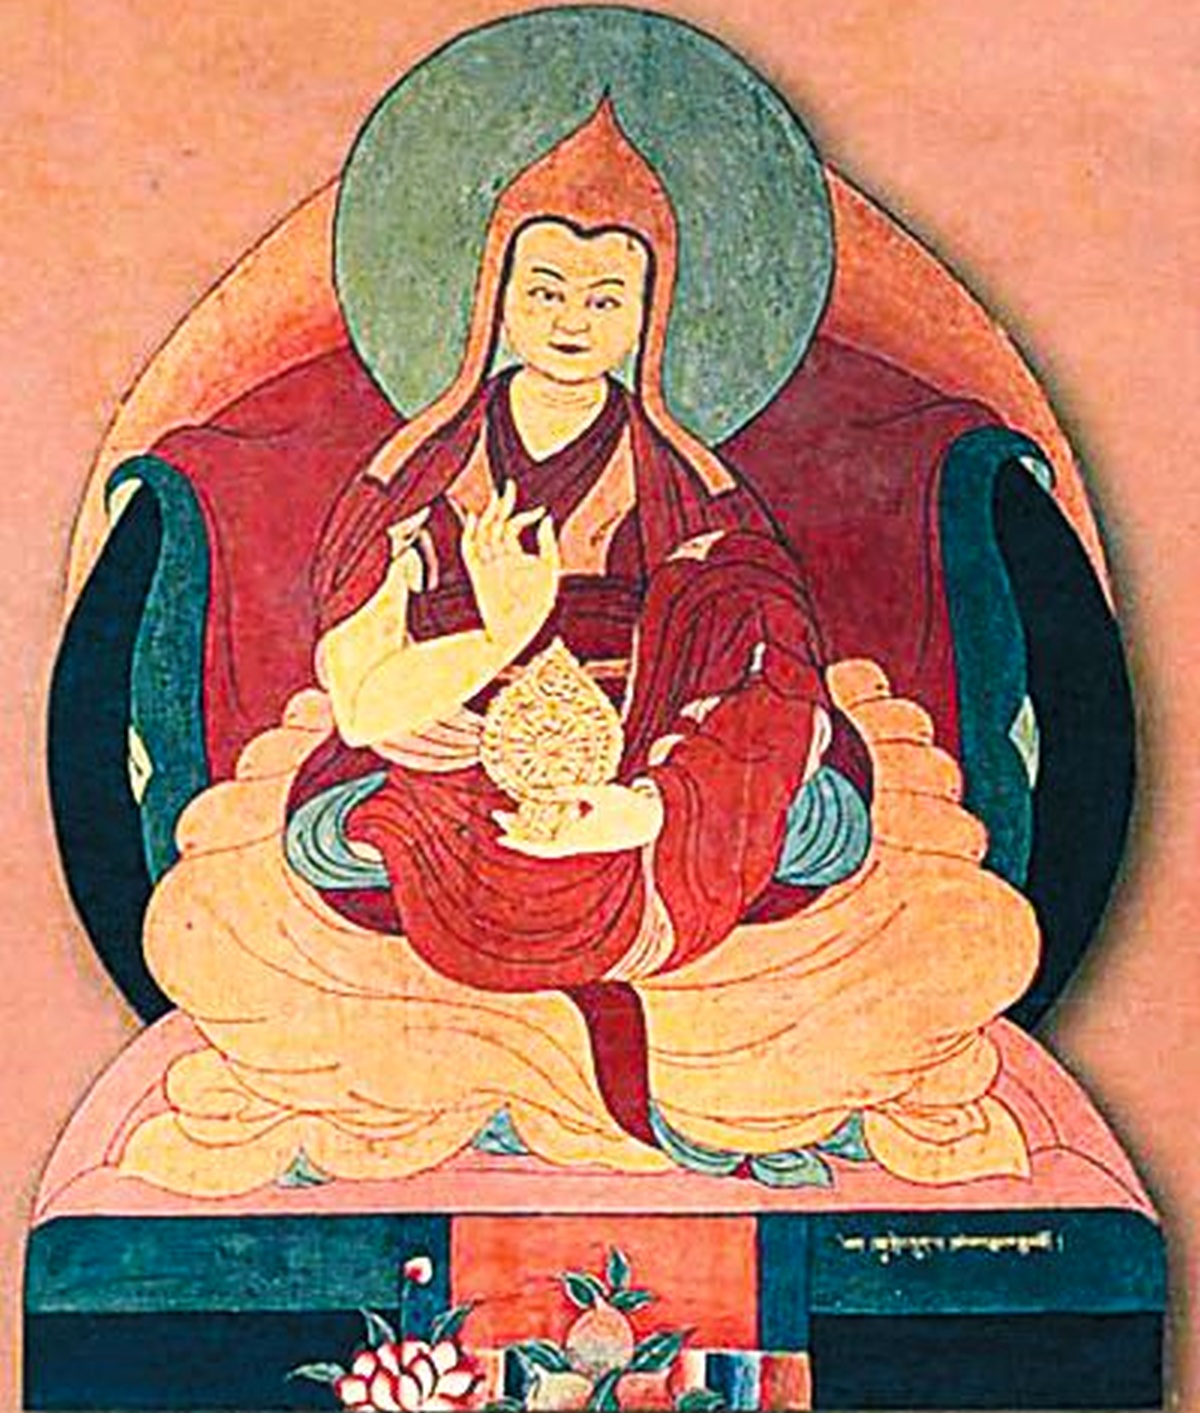 An Indian Dalai Lama